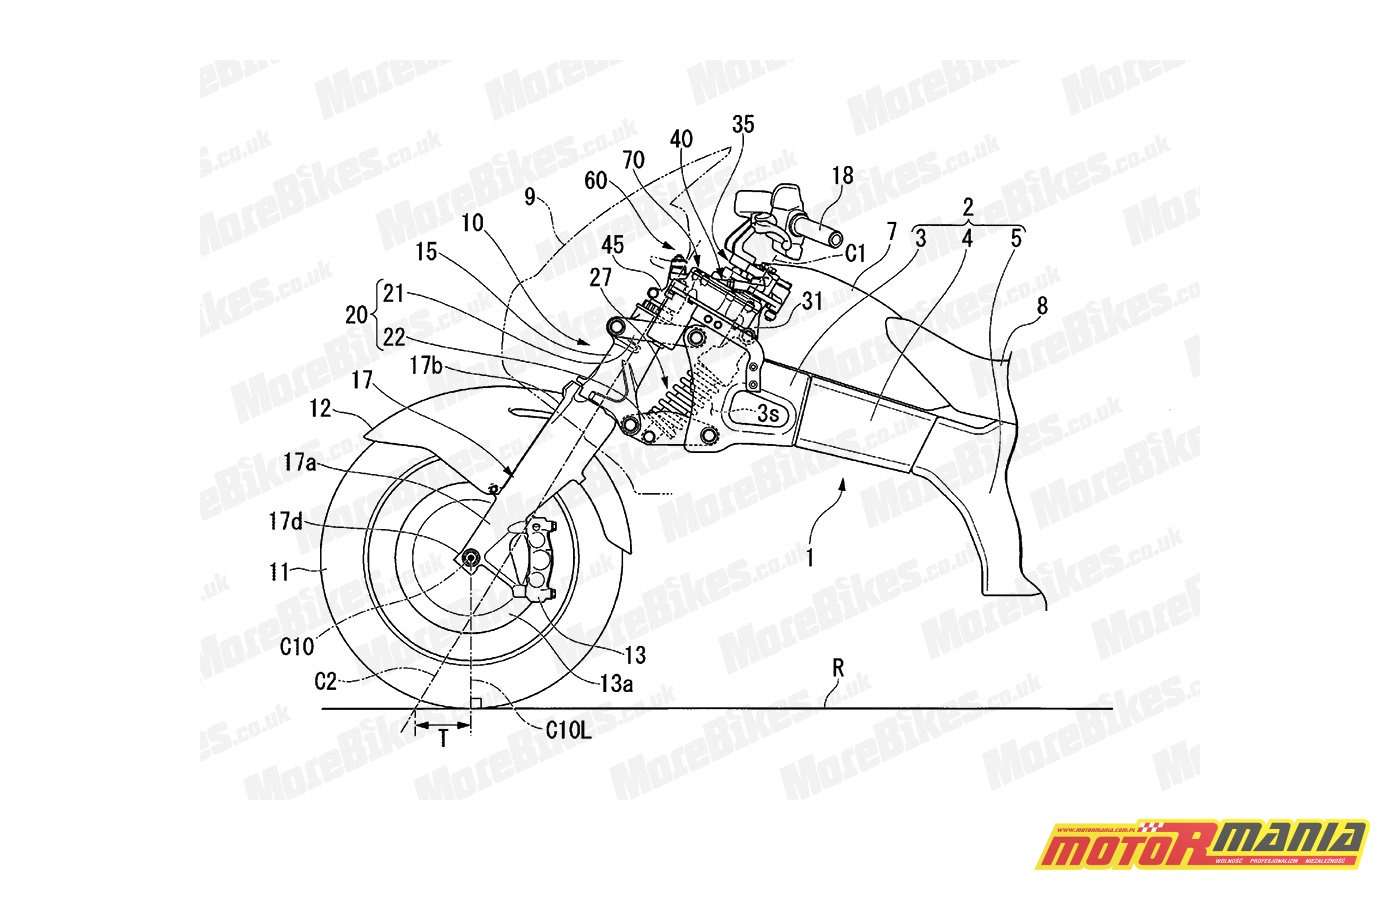 Honda kolejny patent dotyczący wspomagania kierownicy